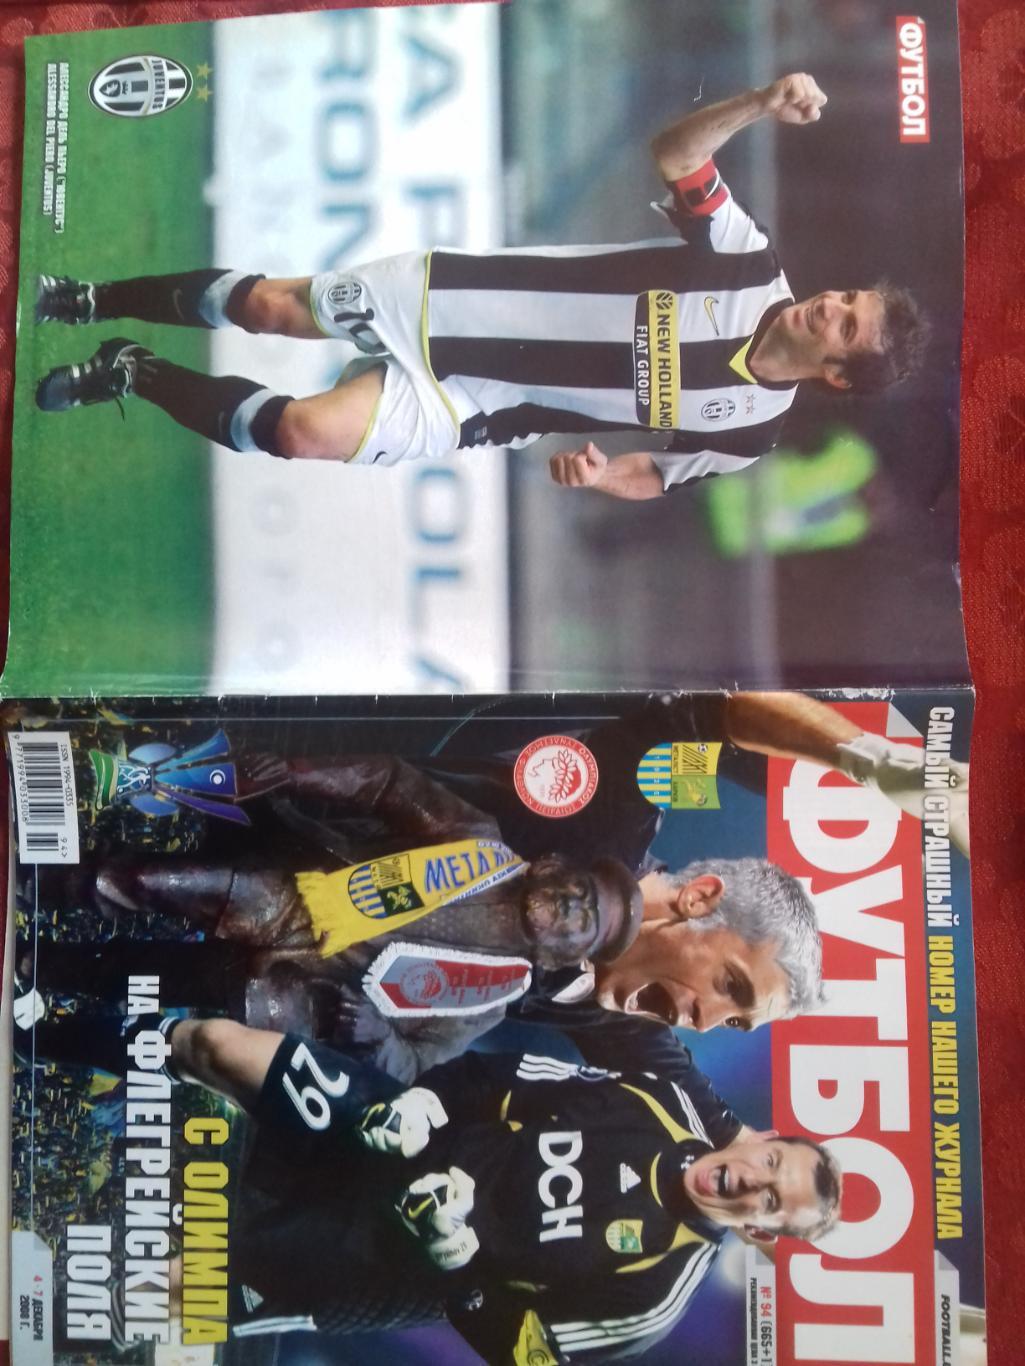 Журнал Футбол № 94 2008г. Постеры Дель Пьеро и Руни